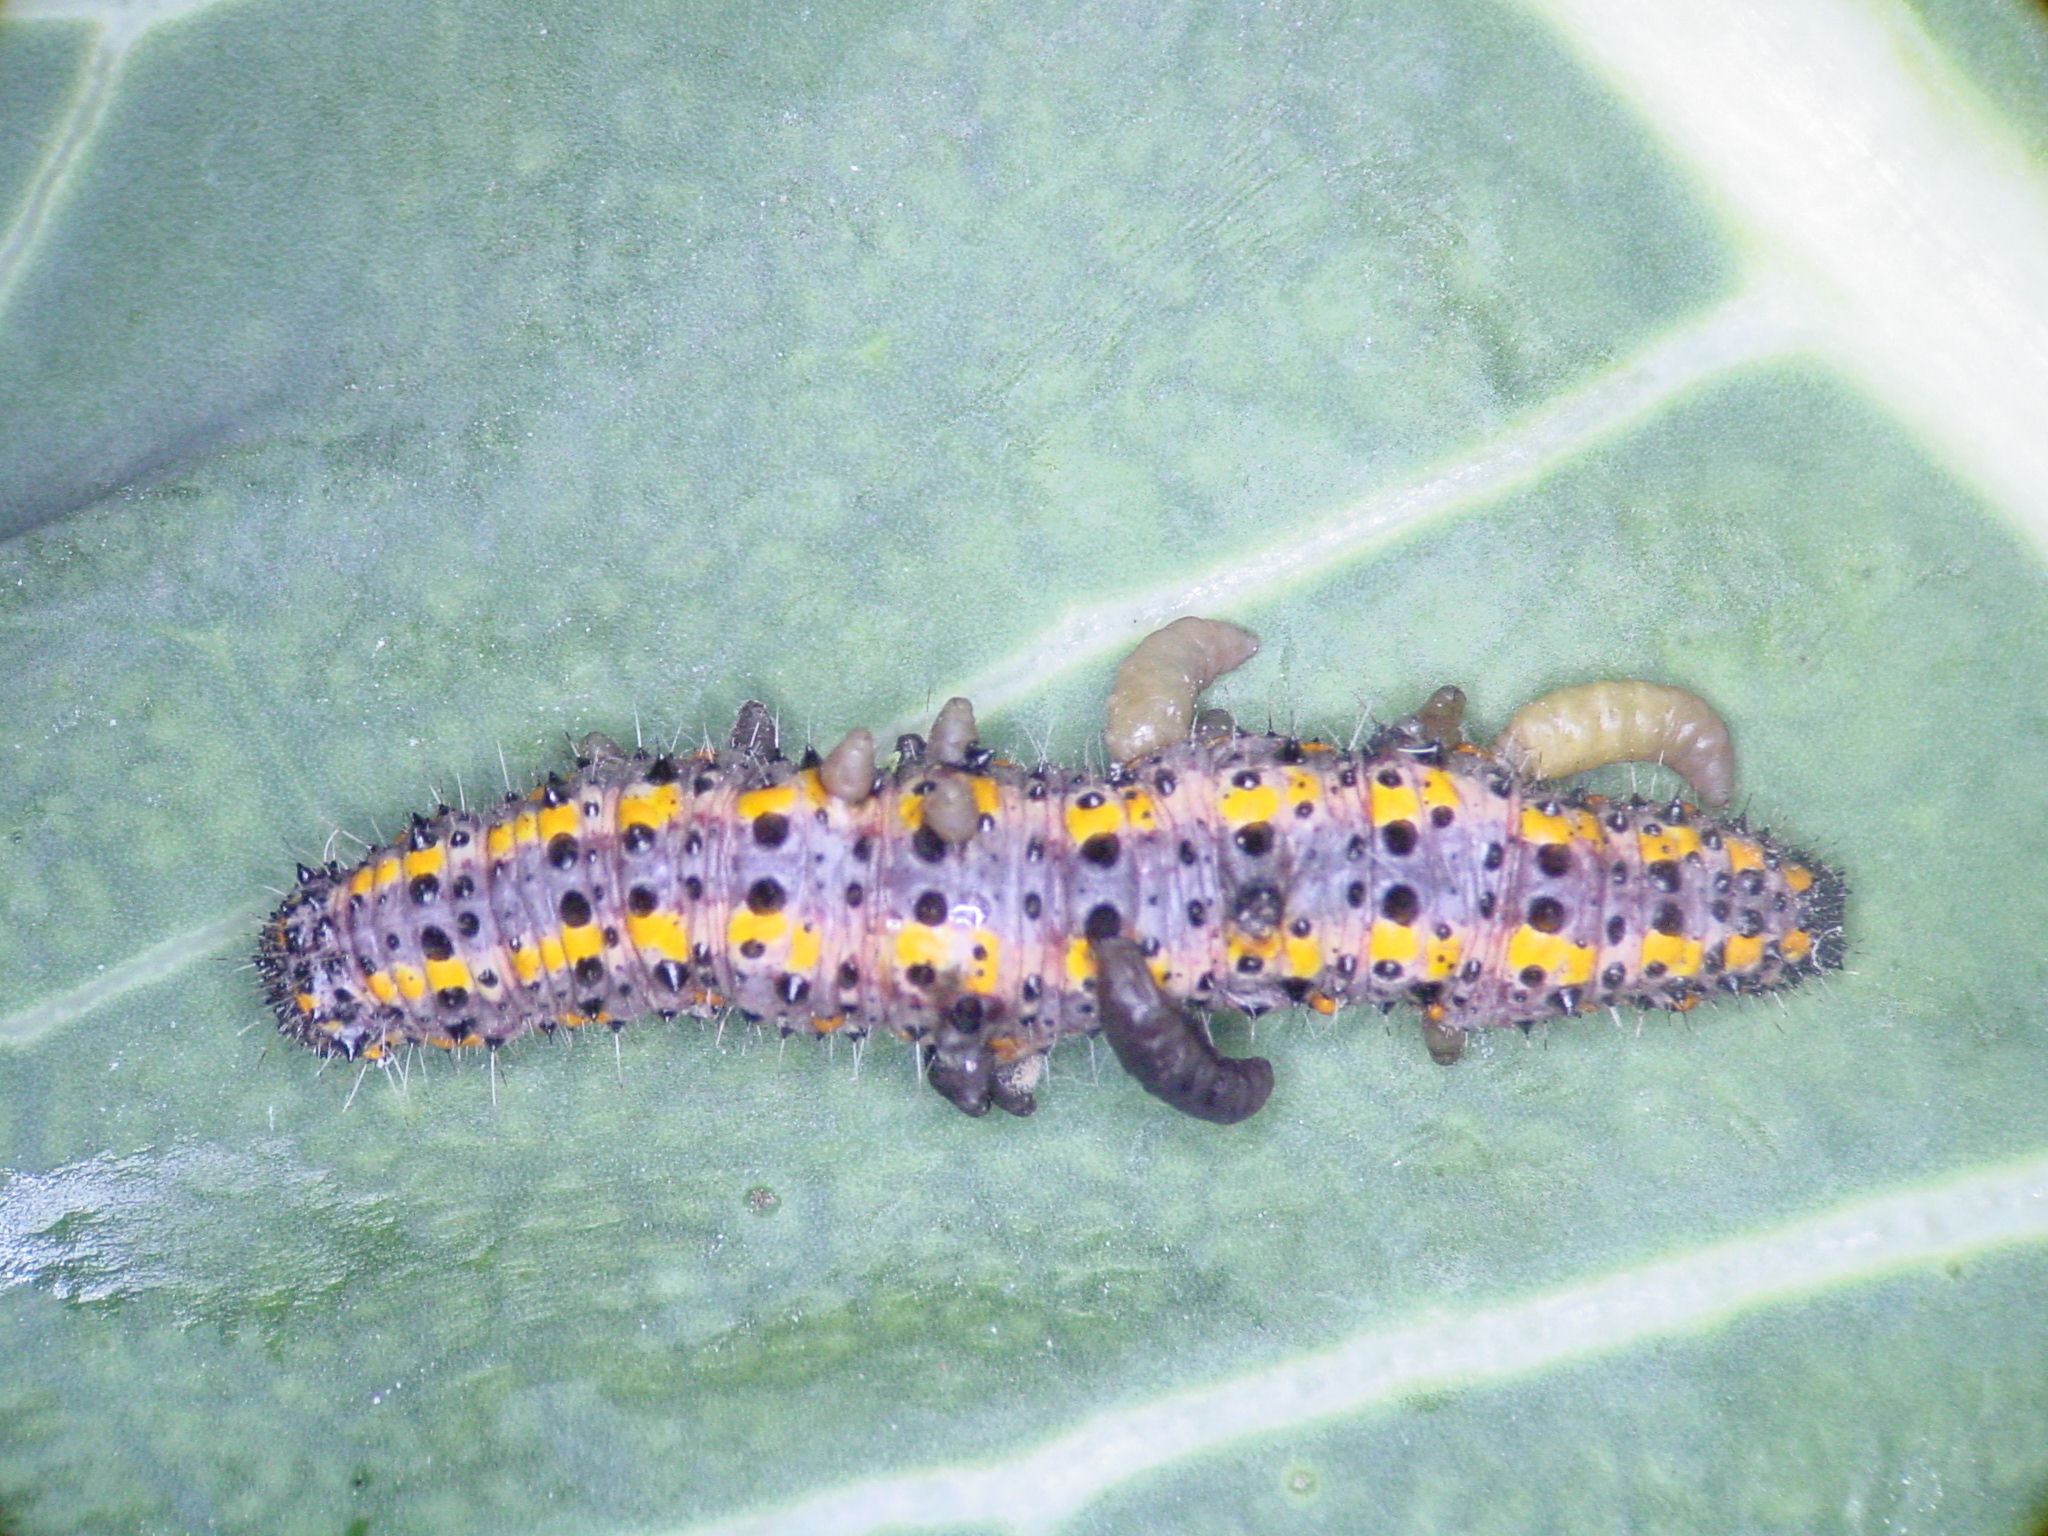 Tautodice parasitada